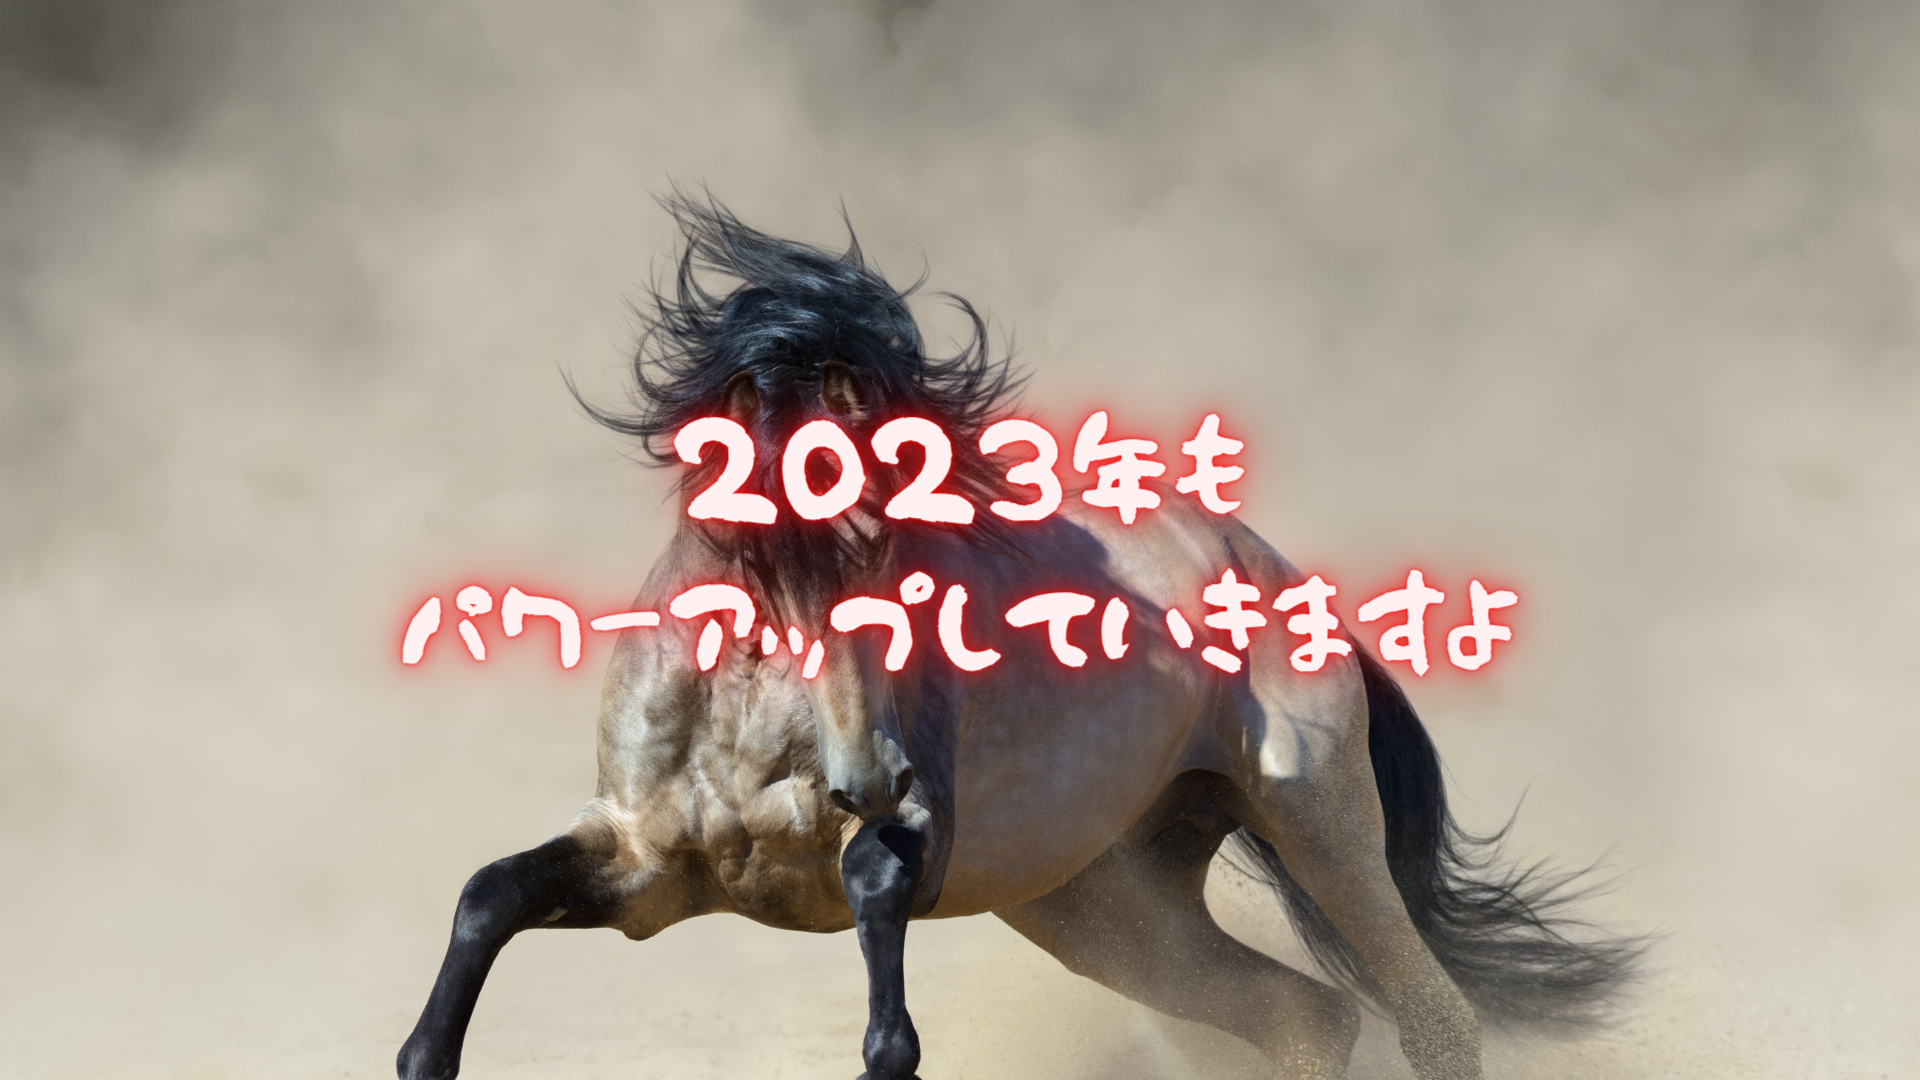 2023年の追加コンテンツ＋1月9日まで期間限定ダウンロードのお知らせ